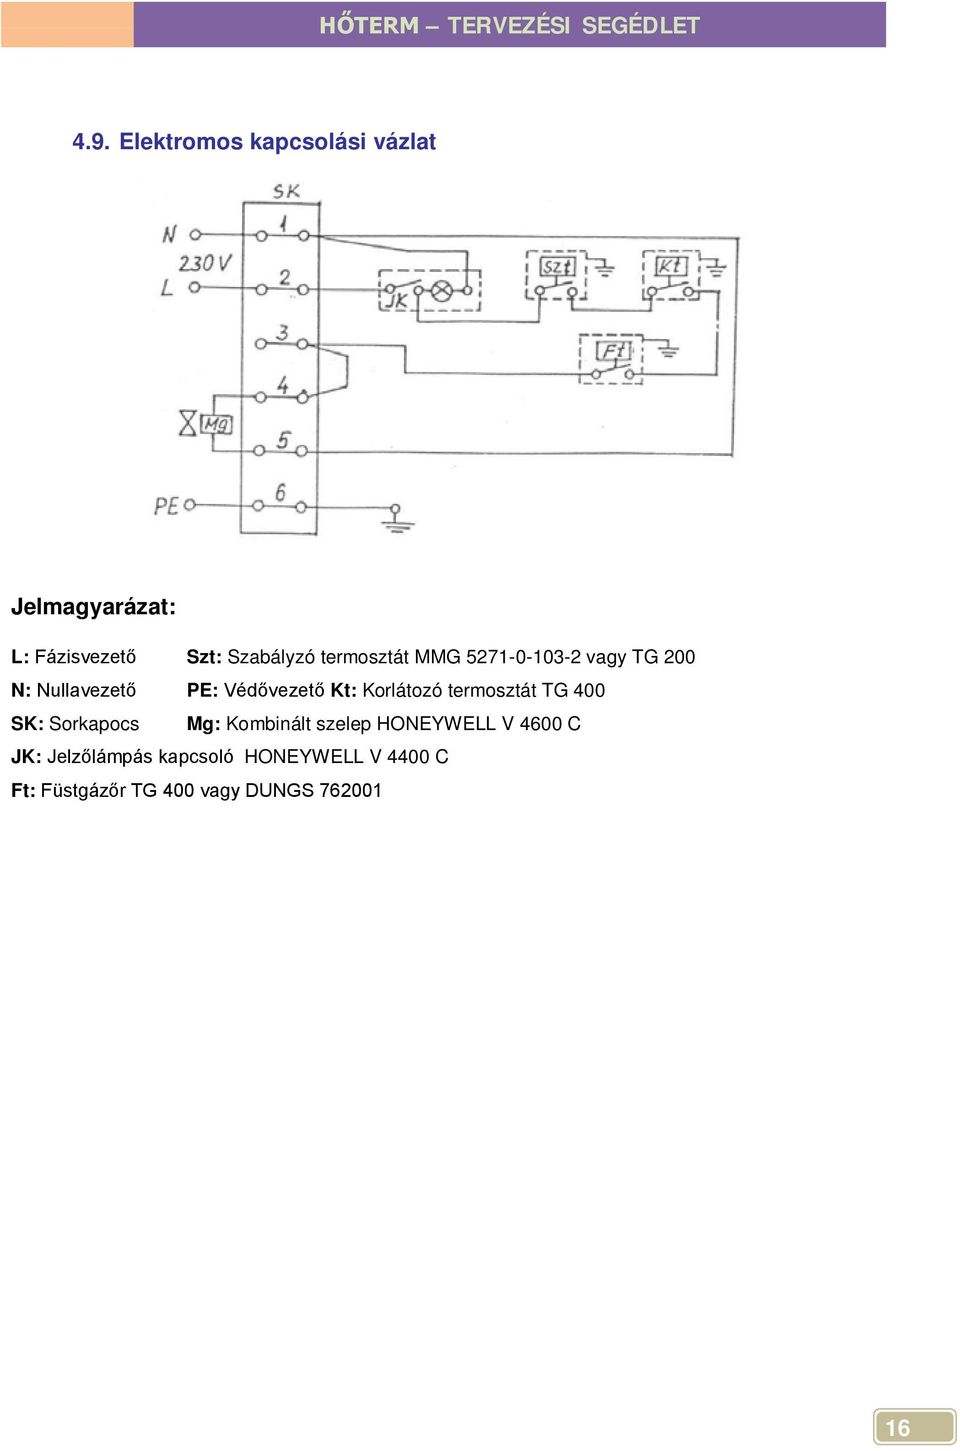 Korlátozó termosztát TG 400 SK: Sorkapocs Mg: Kombinált szelep HONEYWELL V 4600